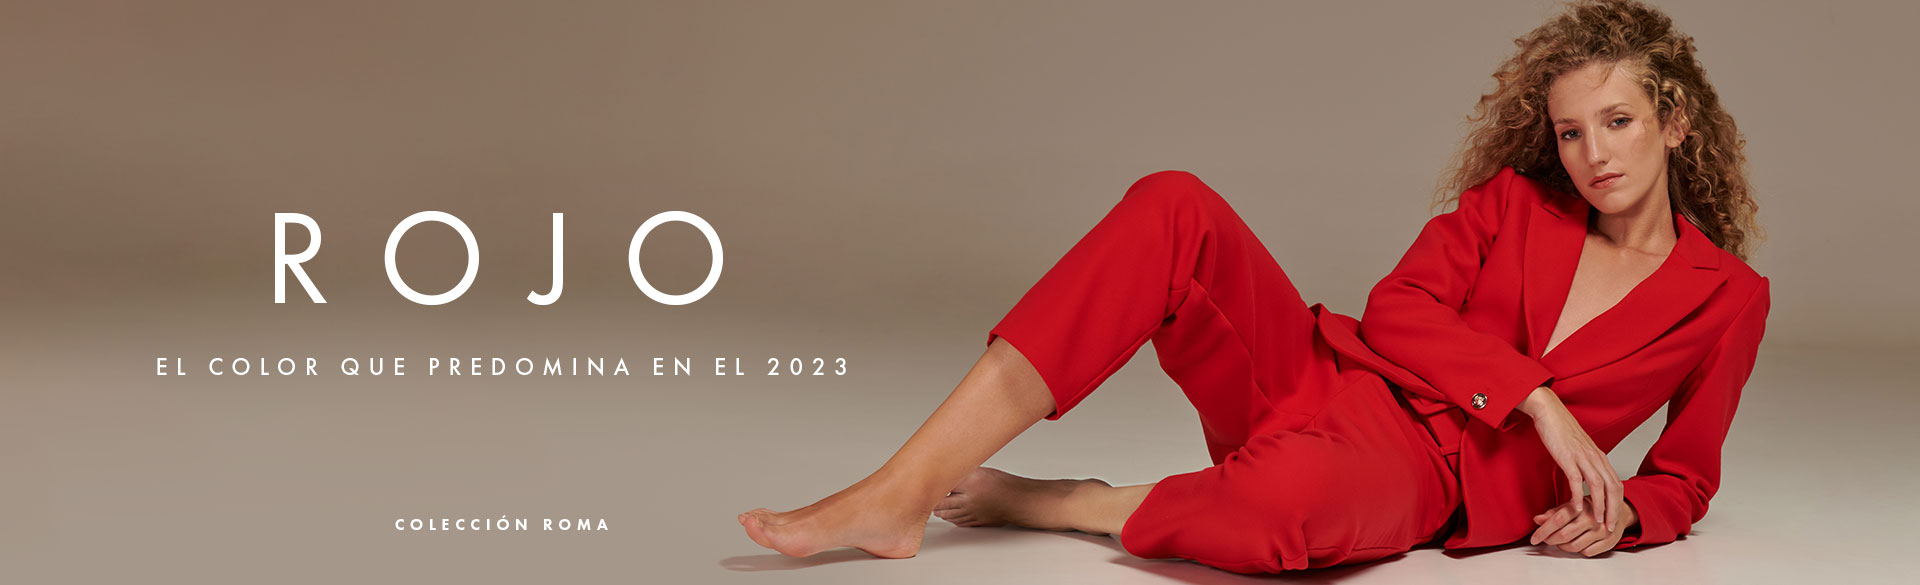 rojo, ropa de moda 2023